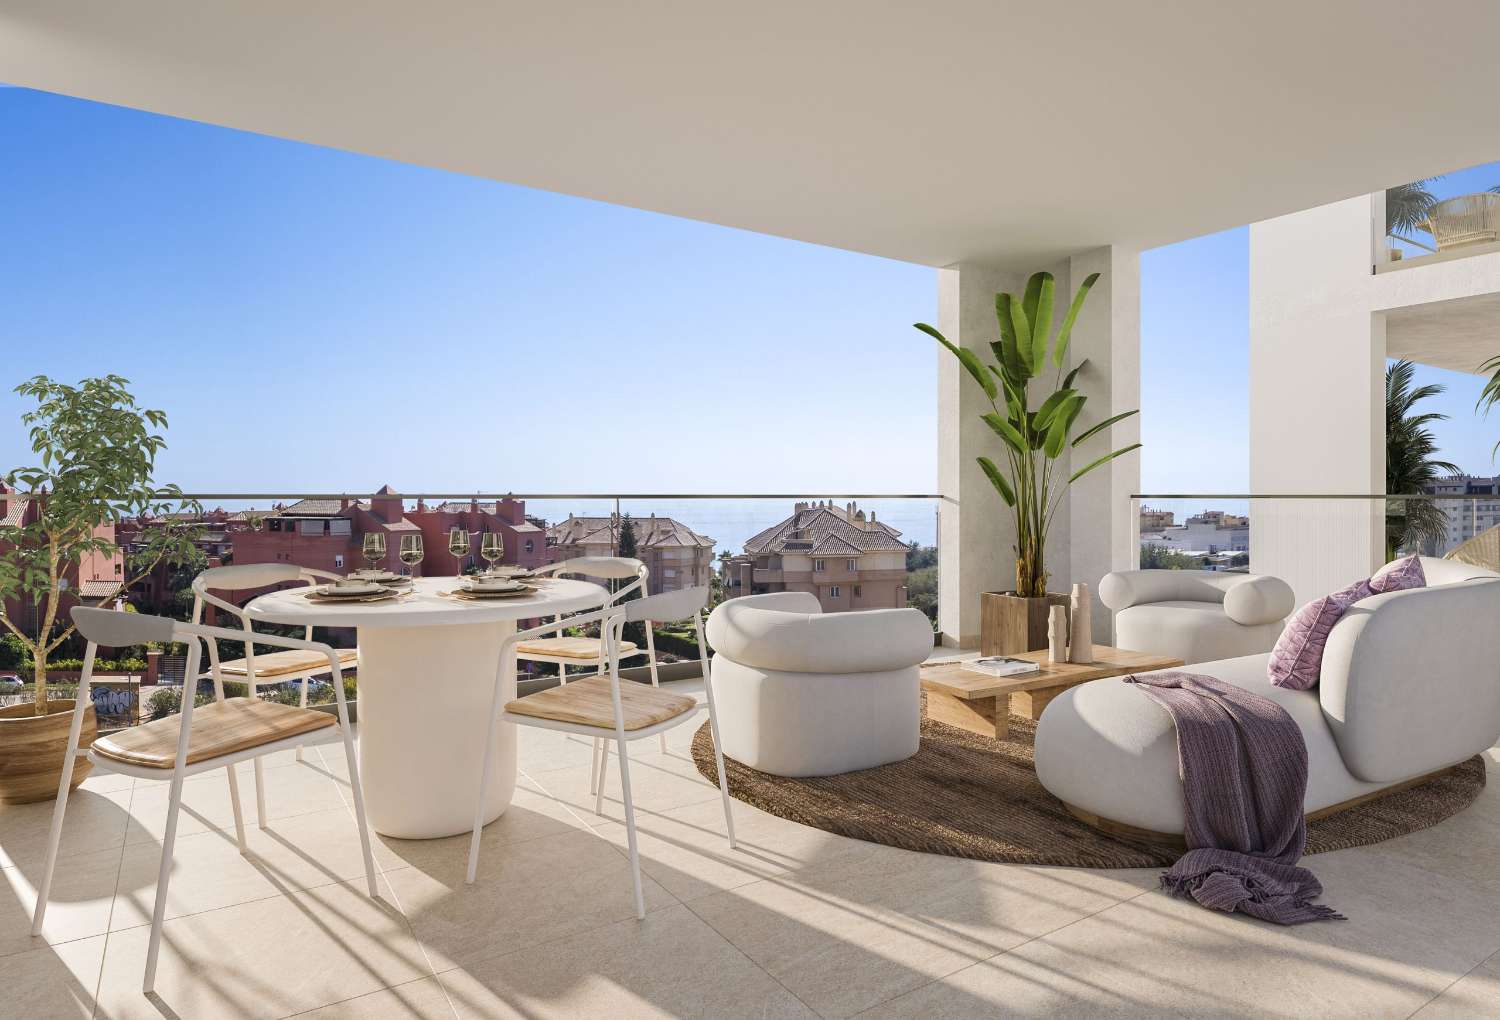 غرفتين أو 3 غرف نوم وحمامين وشرفة مطلة على البحر – ابتداءً من 218.000 يورو